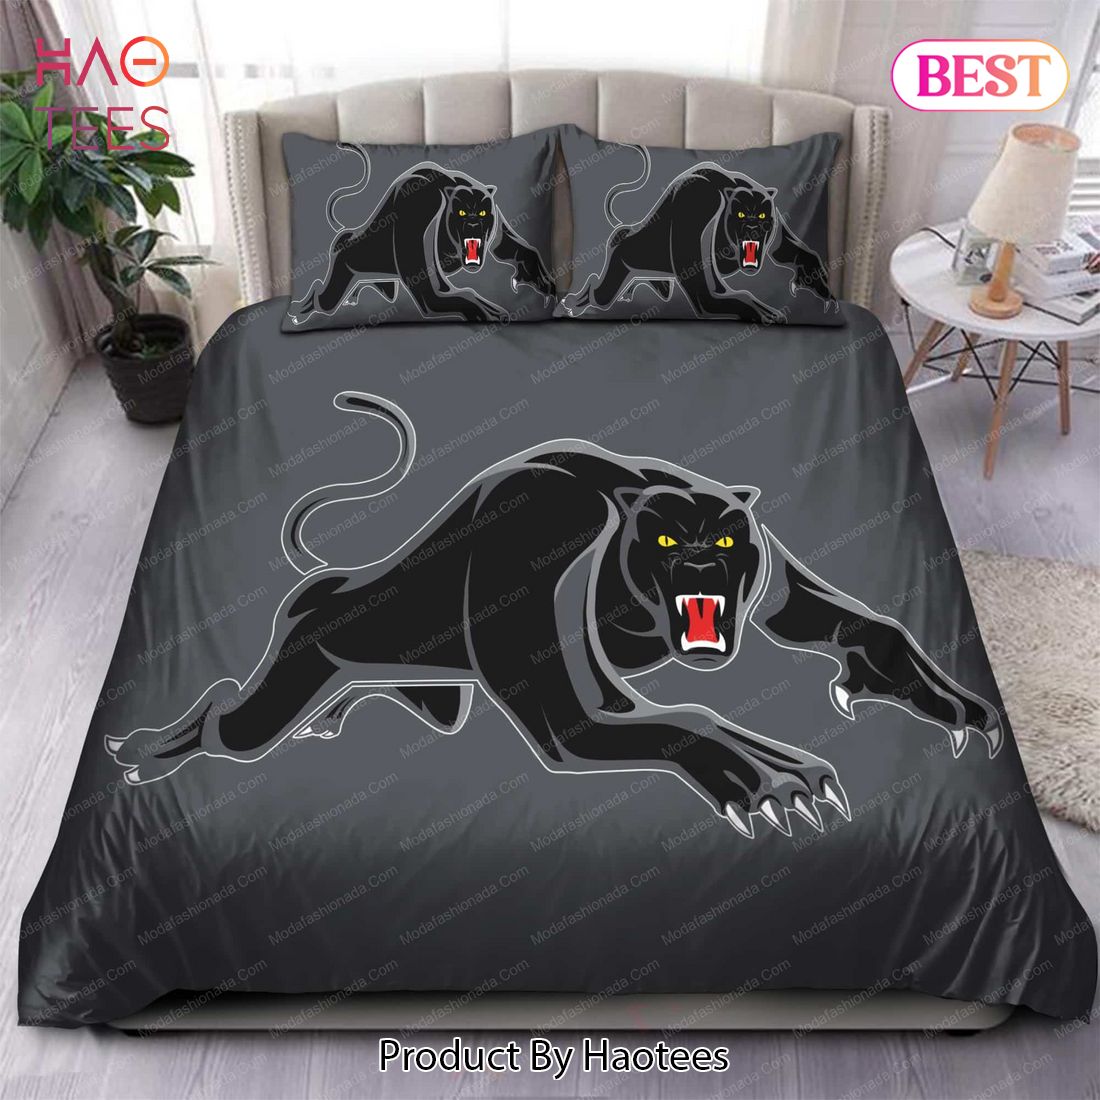 Buy Penrith Panthers Logo 1991 Bedding Sets Bed Sets, Bedroom Sets,  Comforter Sets, Duvet Cover, Bedspread